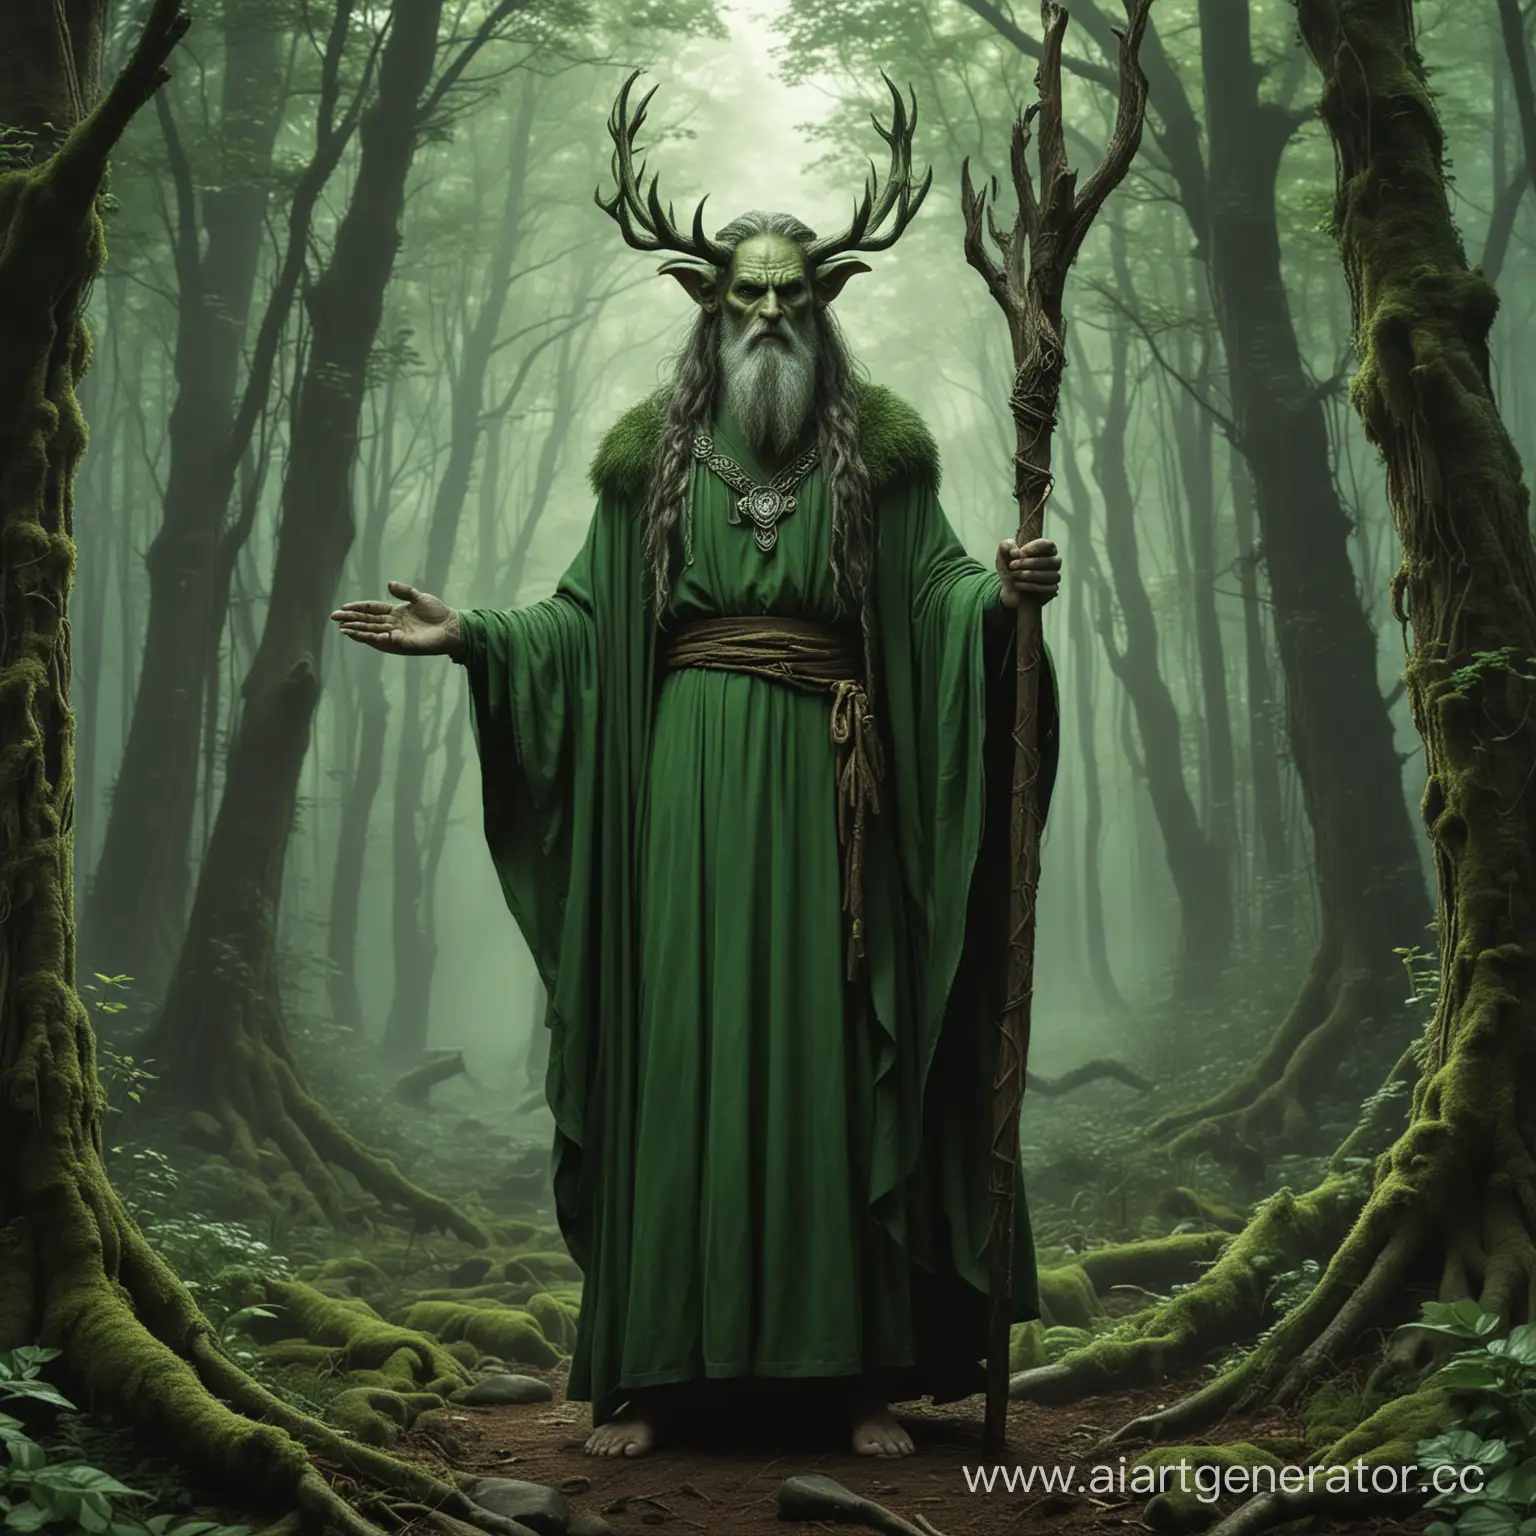 Фентези- друид в друидской зелёной одежде стоит посреди густого леса с посохом и грозным лицом в зелёных одеяниях